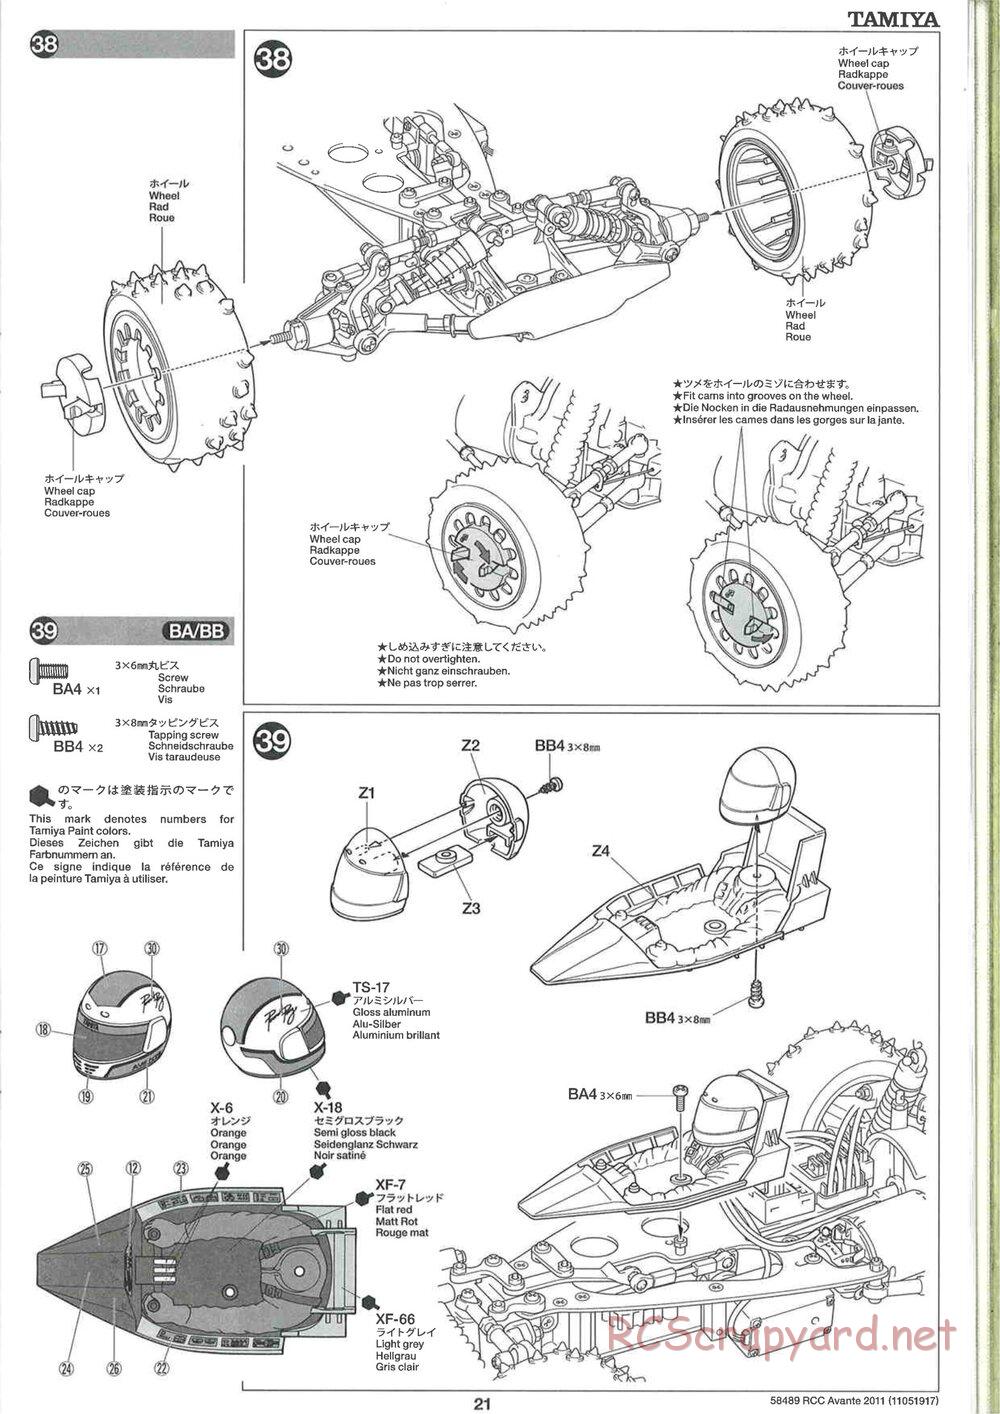 Tamiya - Avante 2011 - AV Chassis - Manual - Page 21